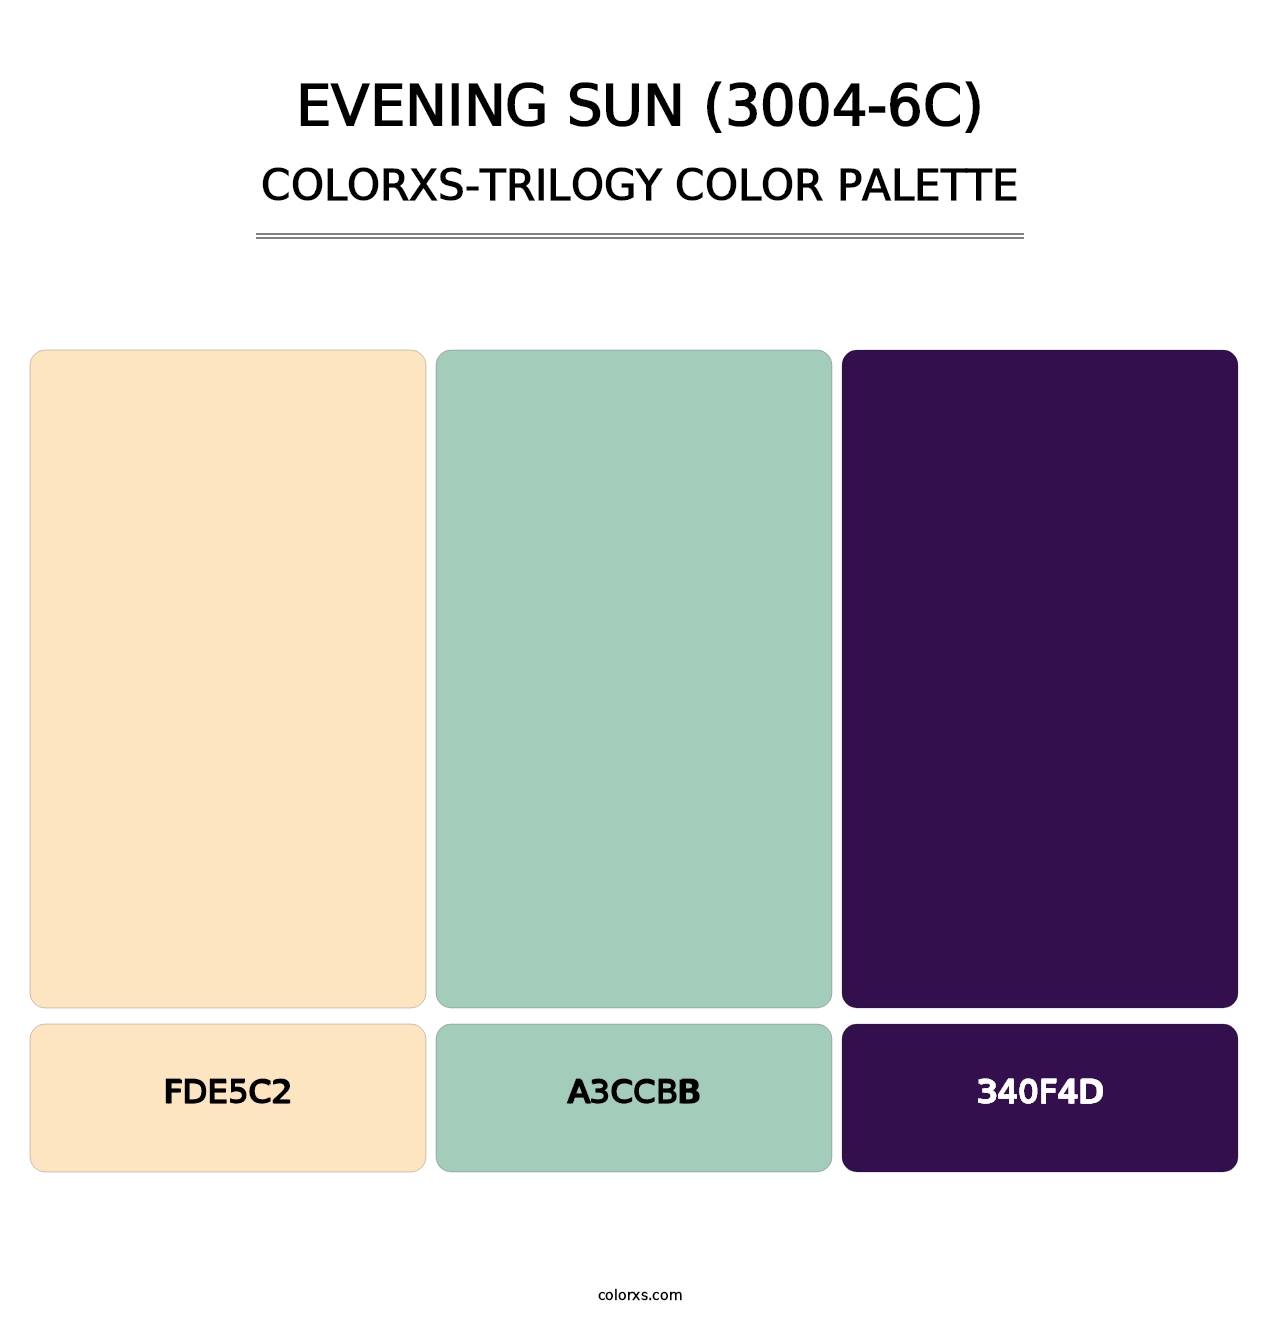 Evening Sun (3004-6C) - Colorxs Trilogy Palette